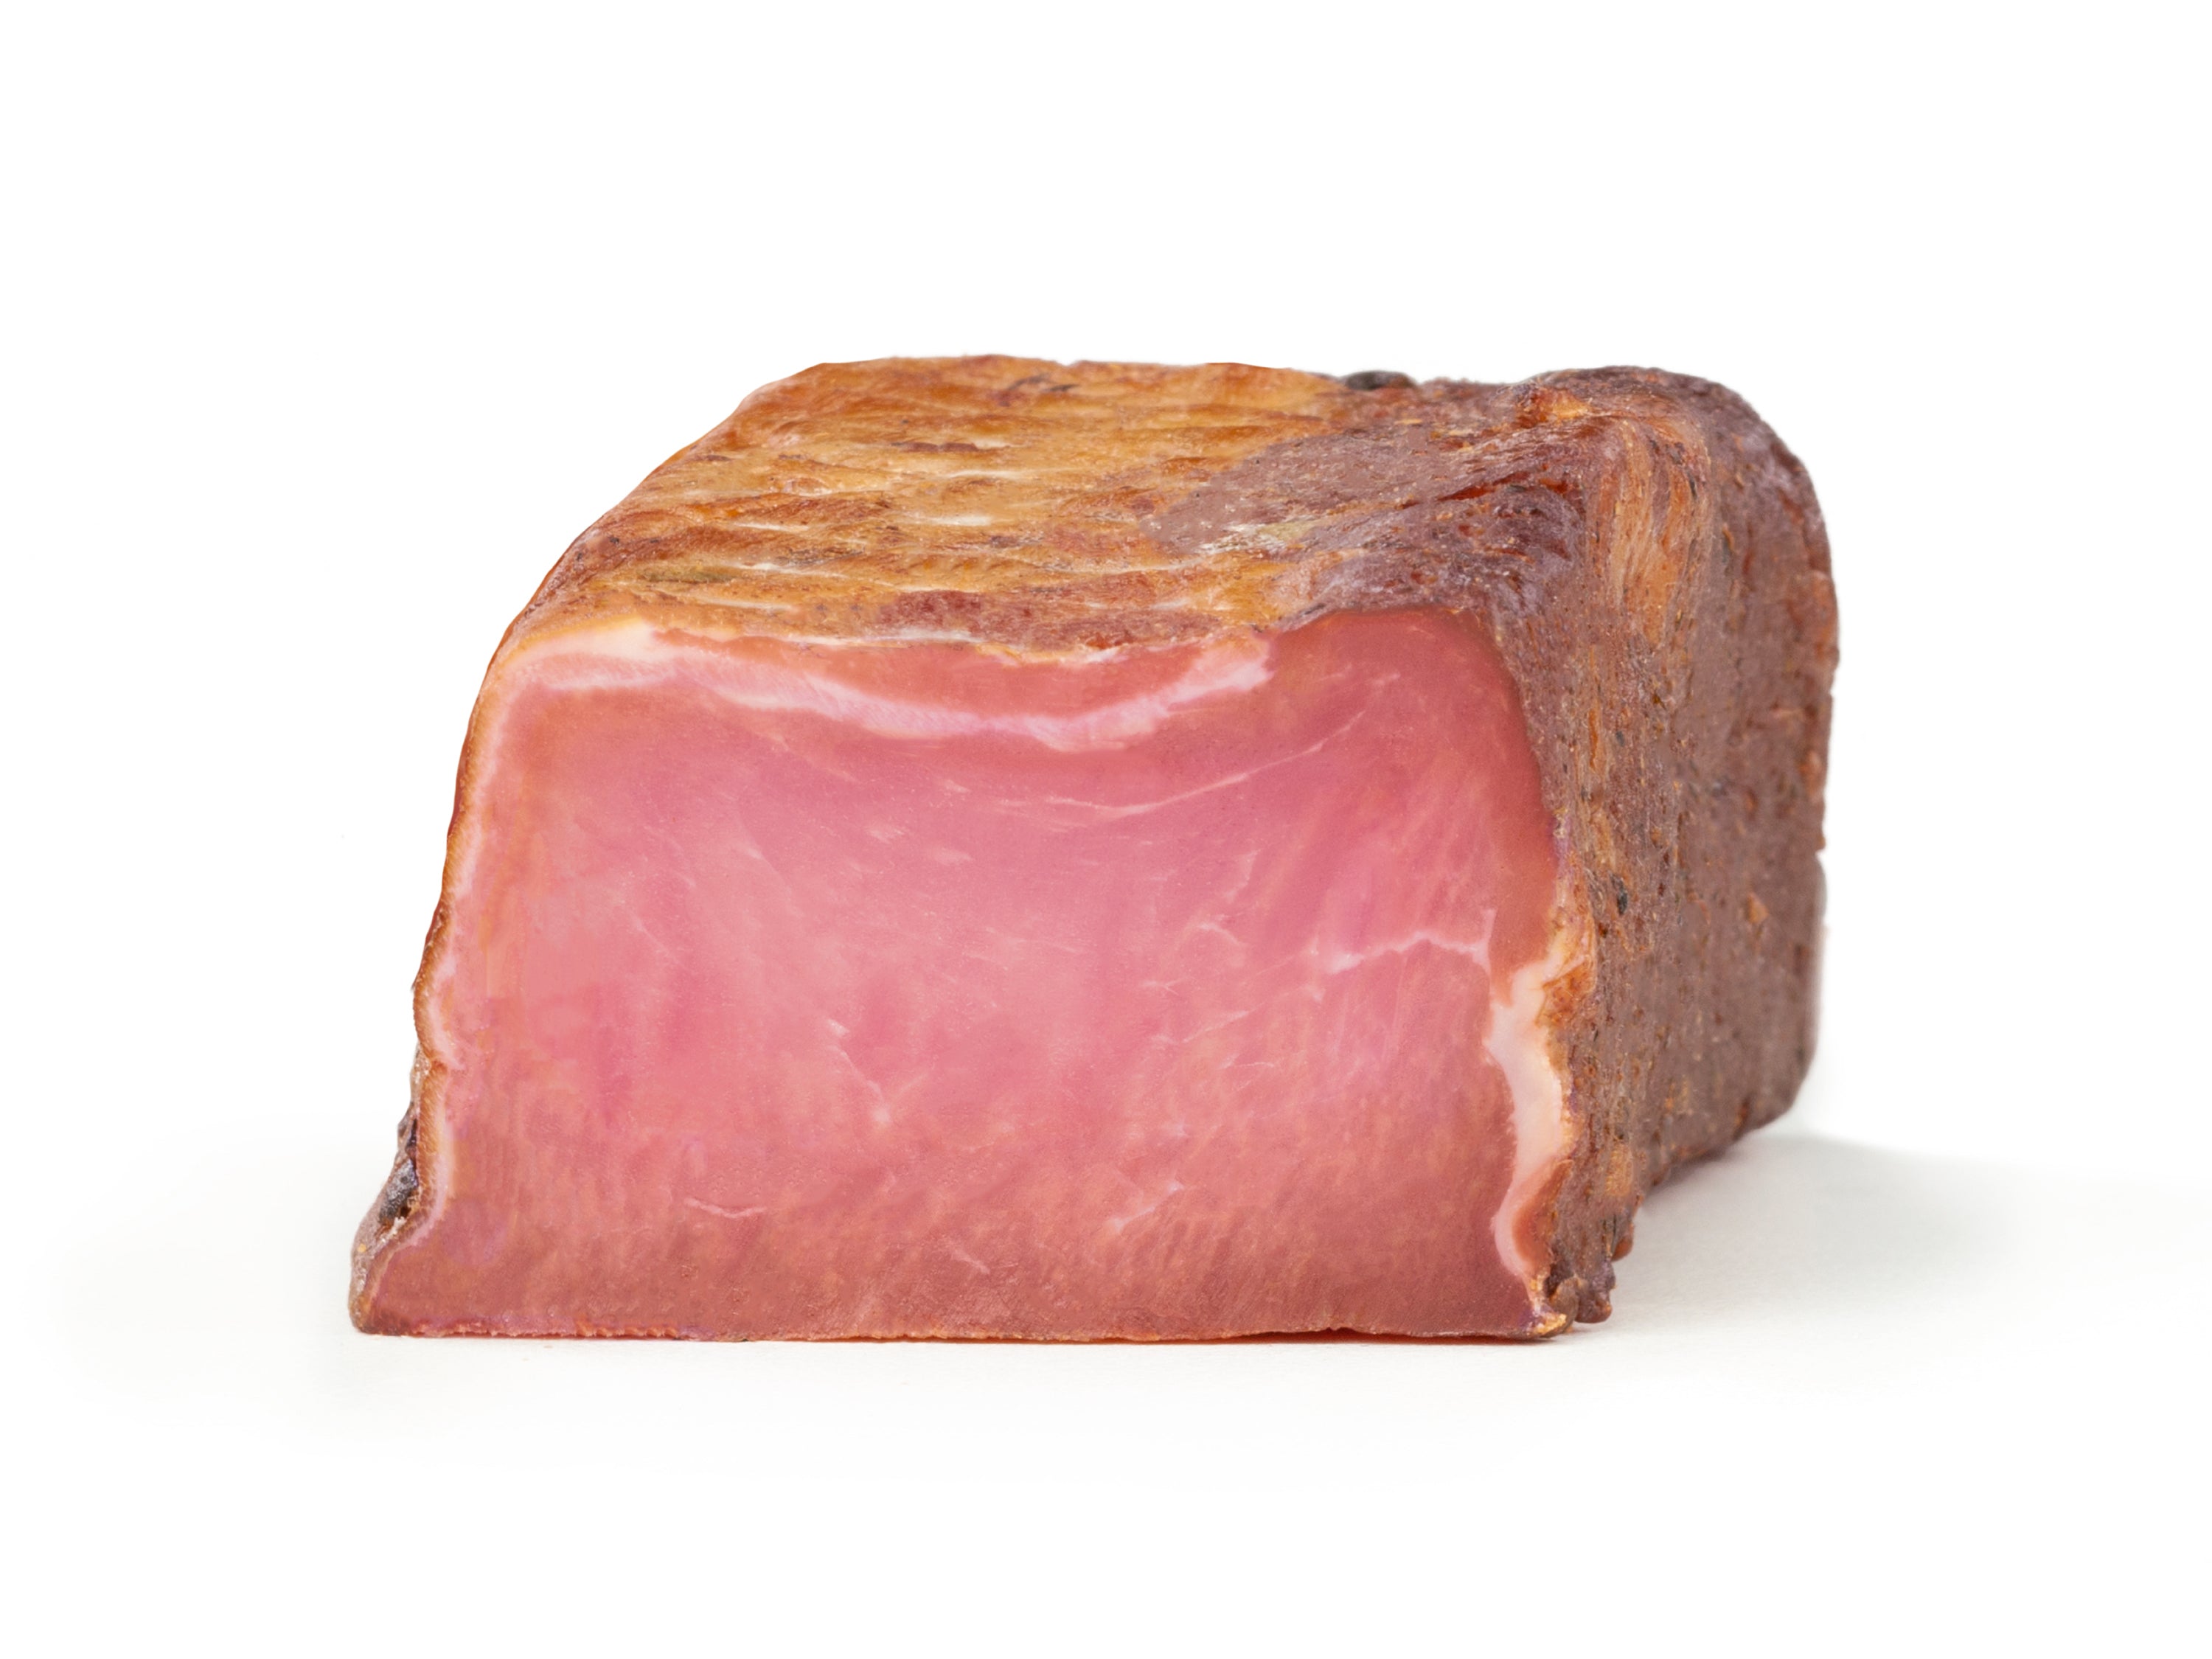 Ein mageres Stück getroxknettes Fleisch vom Strohschwein. Verfeinert mit ein wenig Salz und natürlichen Gewürzen und gereift in der Bergluft des Nationalparks Stilfserjoch in Südtirol.